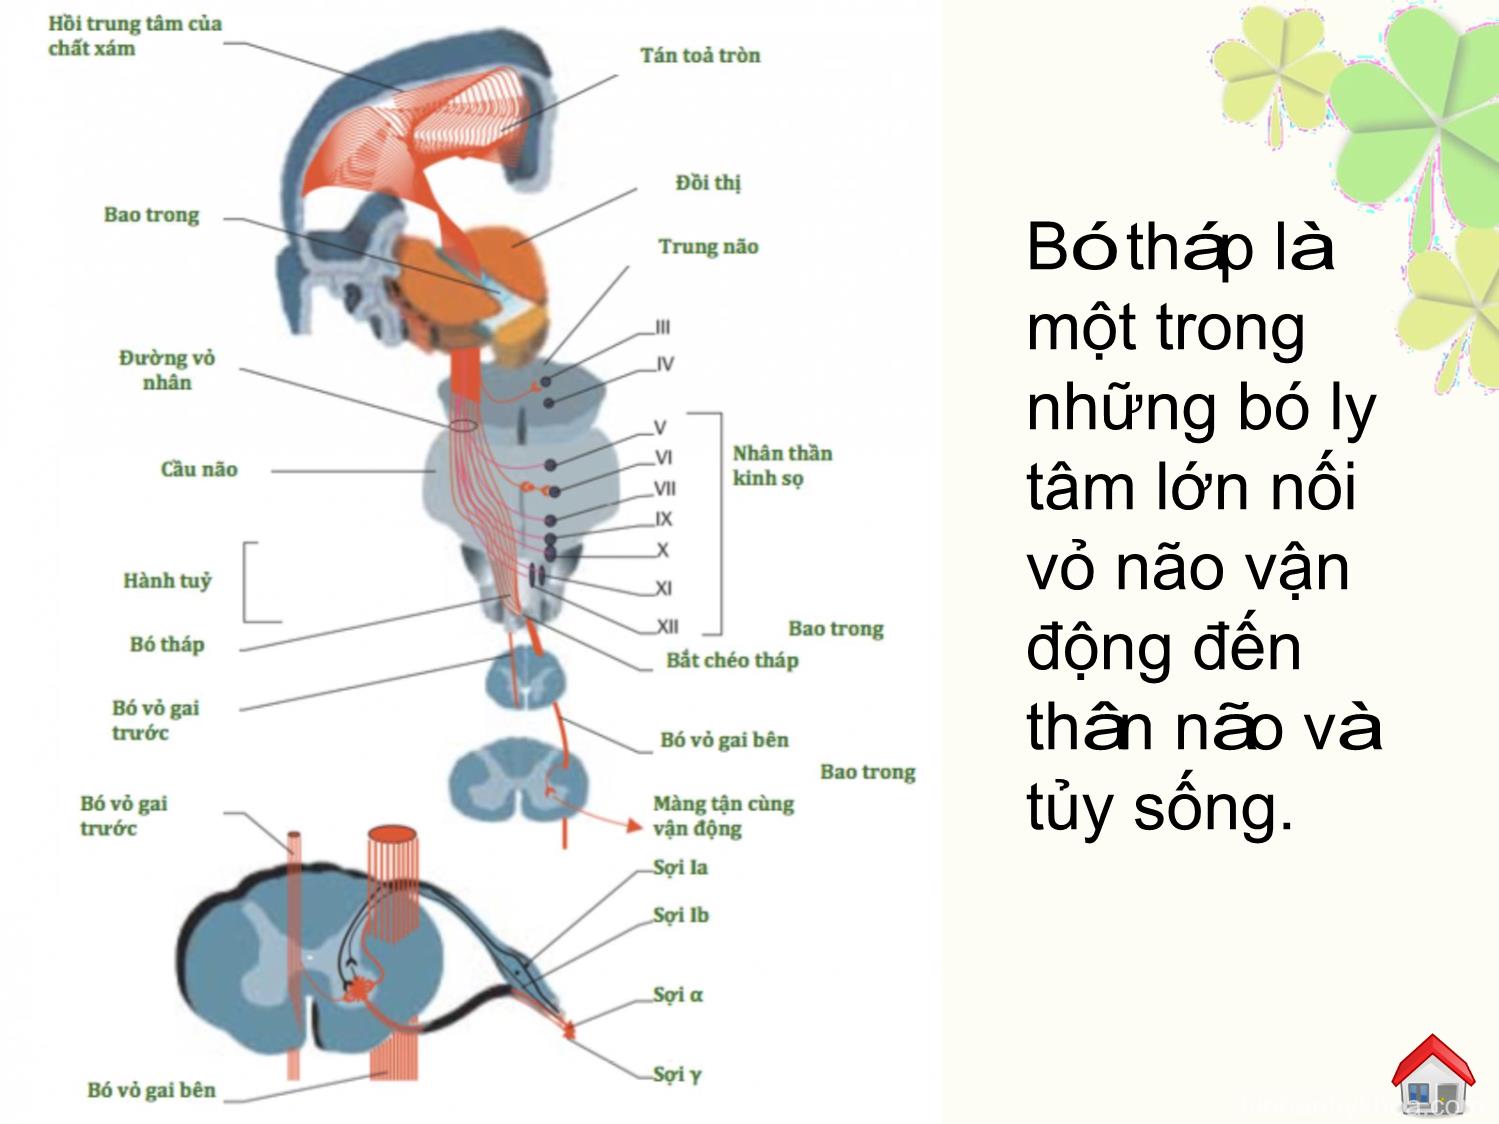 Đặc điểm hình ảnh bó tháp trên cộng hưởng từ khuếch tán theo hướng (dti) của người bình thường và thay đổi trong tổn thương nhồi máu não cấp trang 5